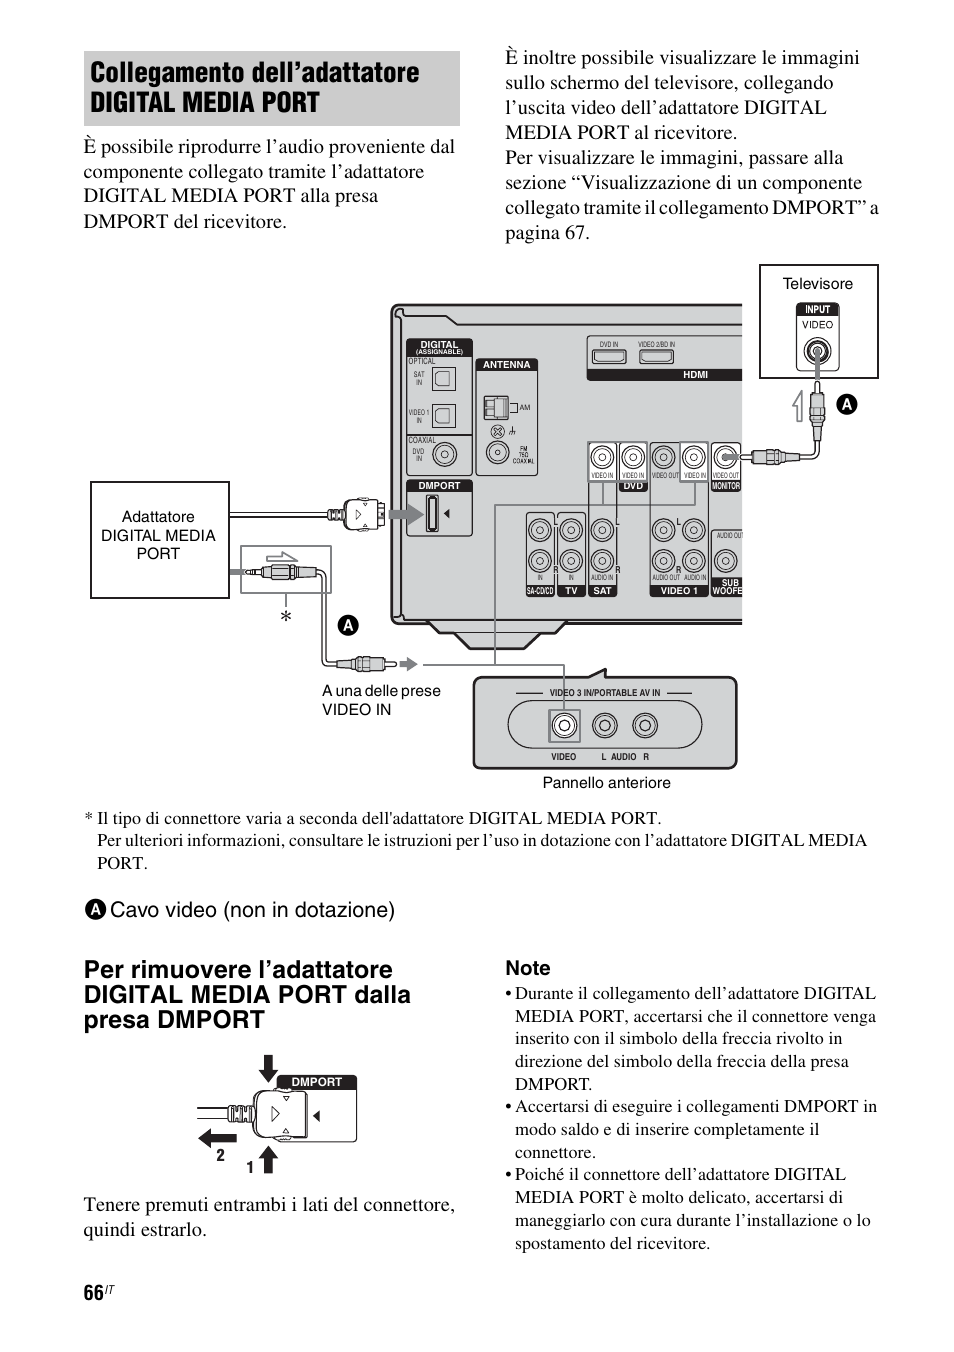 Collegamento dell'adattatore digital media port, Acavo video (non in  dotazione) | Sony STR-DG710 User Manual | Page 66 / 168